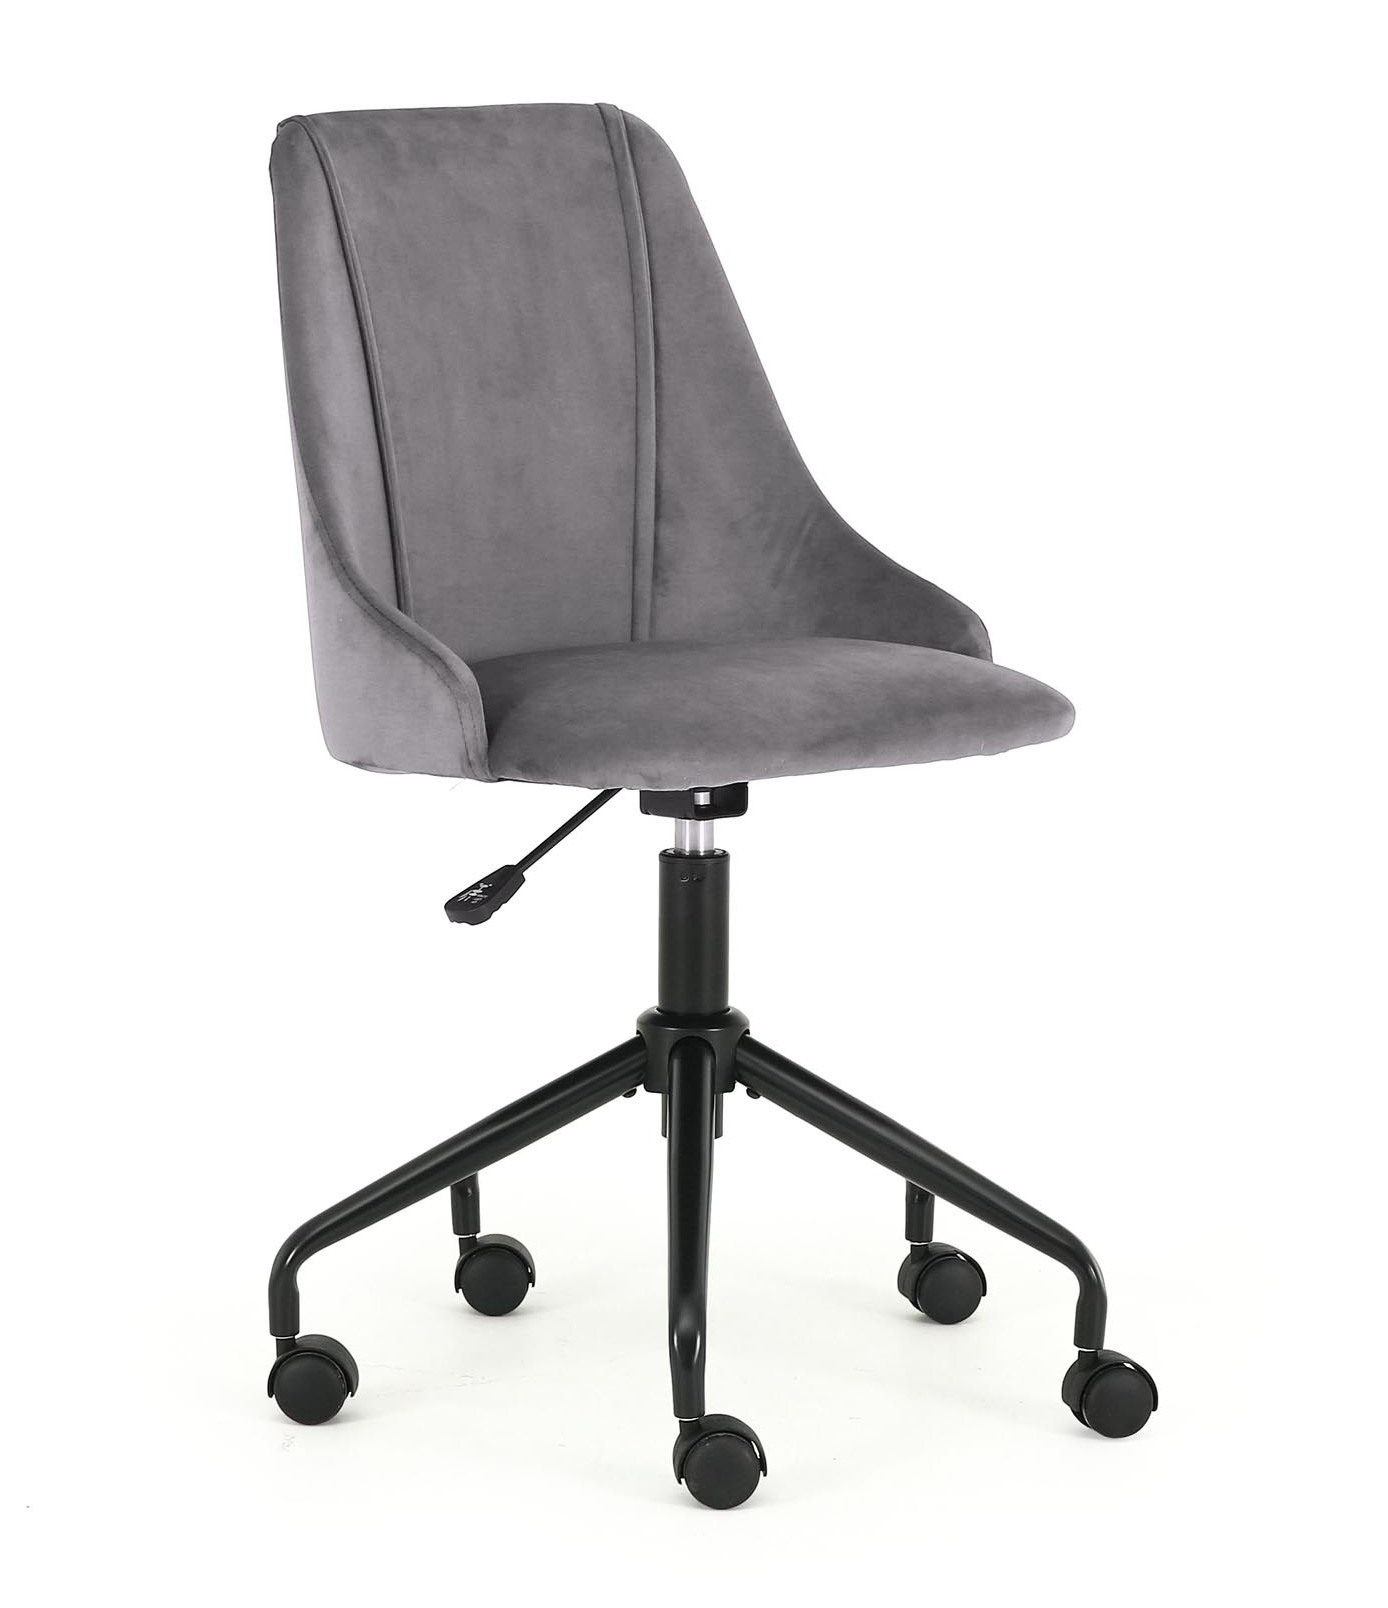 Breaks chair. Офисное кресло Halmar Aurelius. Детское кресло Halmar Break, серый / черный цвет. Стул компьютерный серый. Офисное кресло с металлической крестовиной.